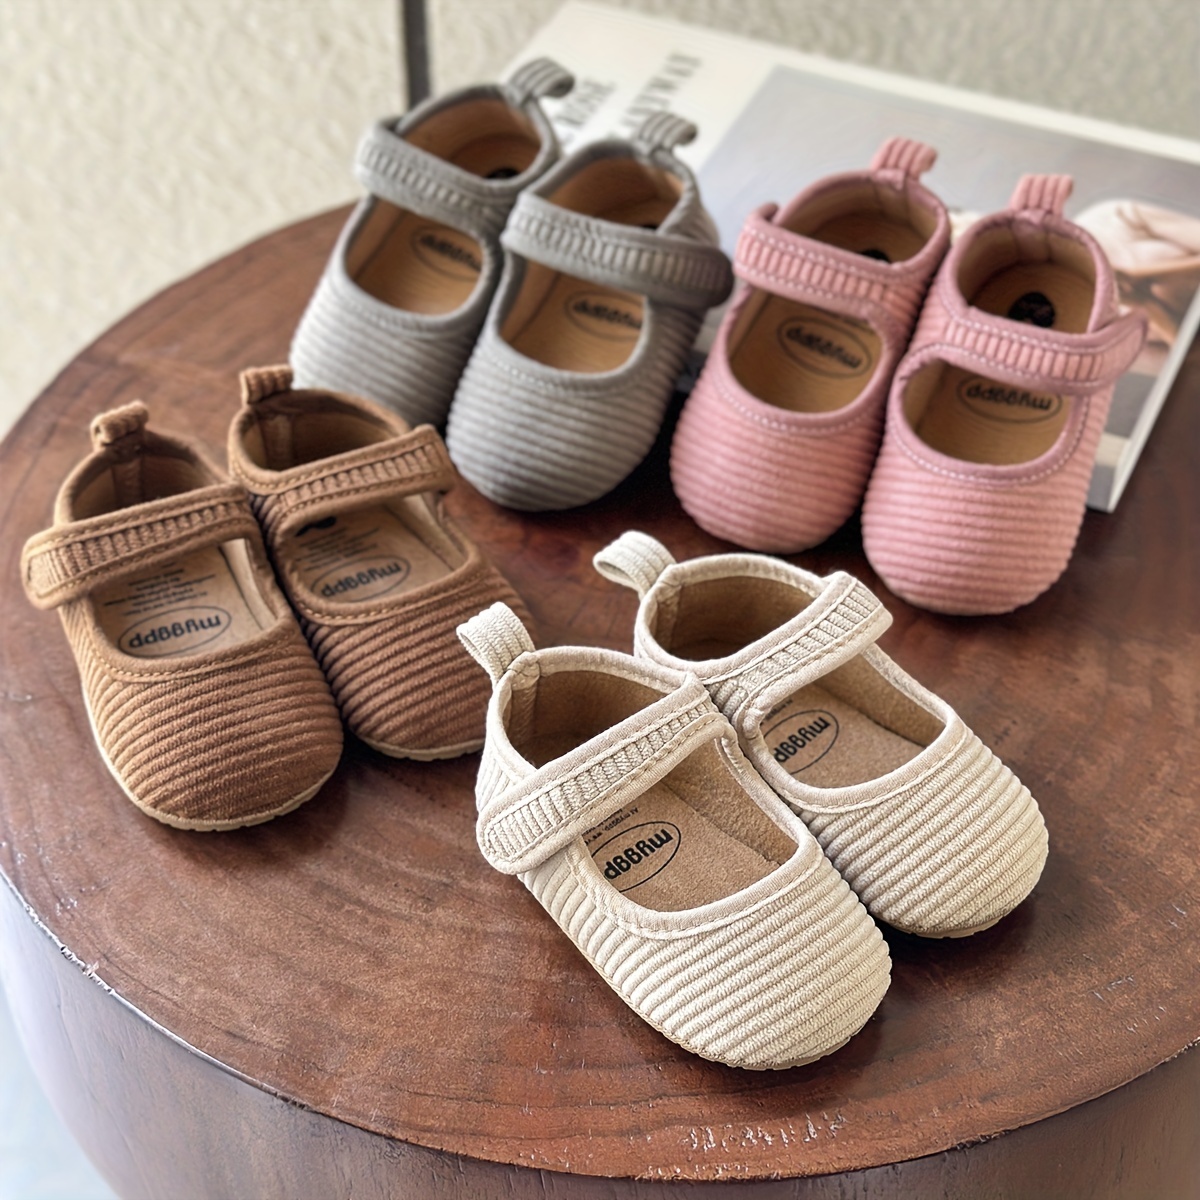 Zapatos para recién nacidos y bebés varones: todos los estilos